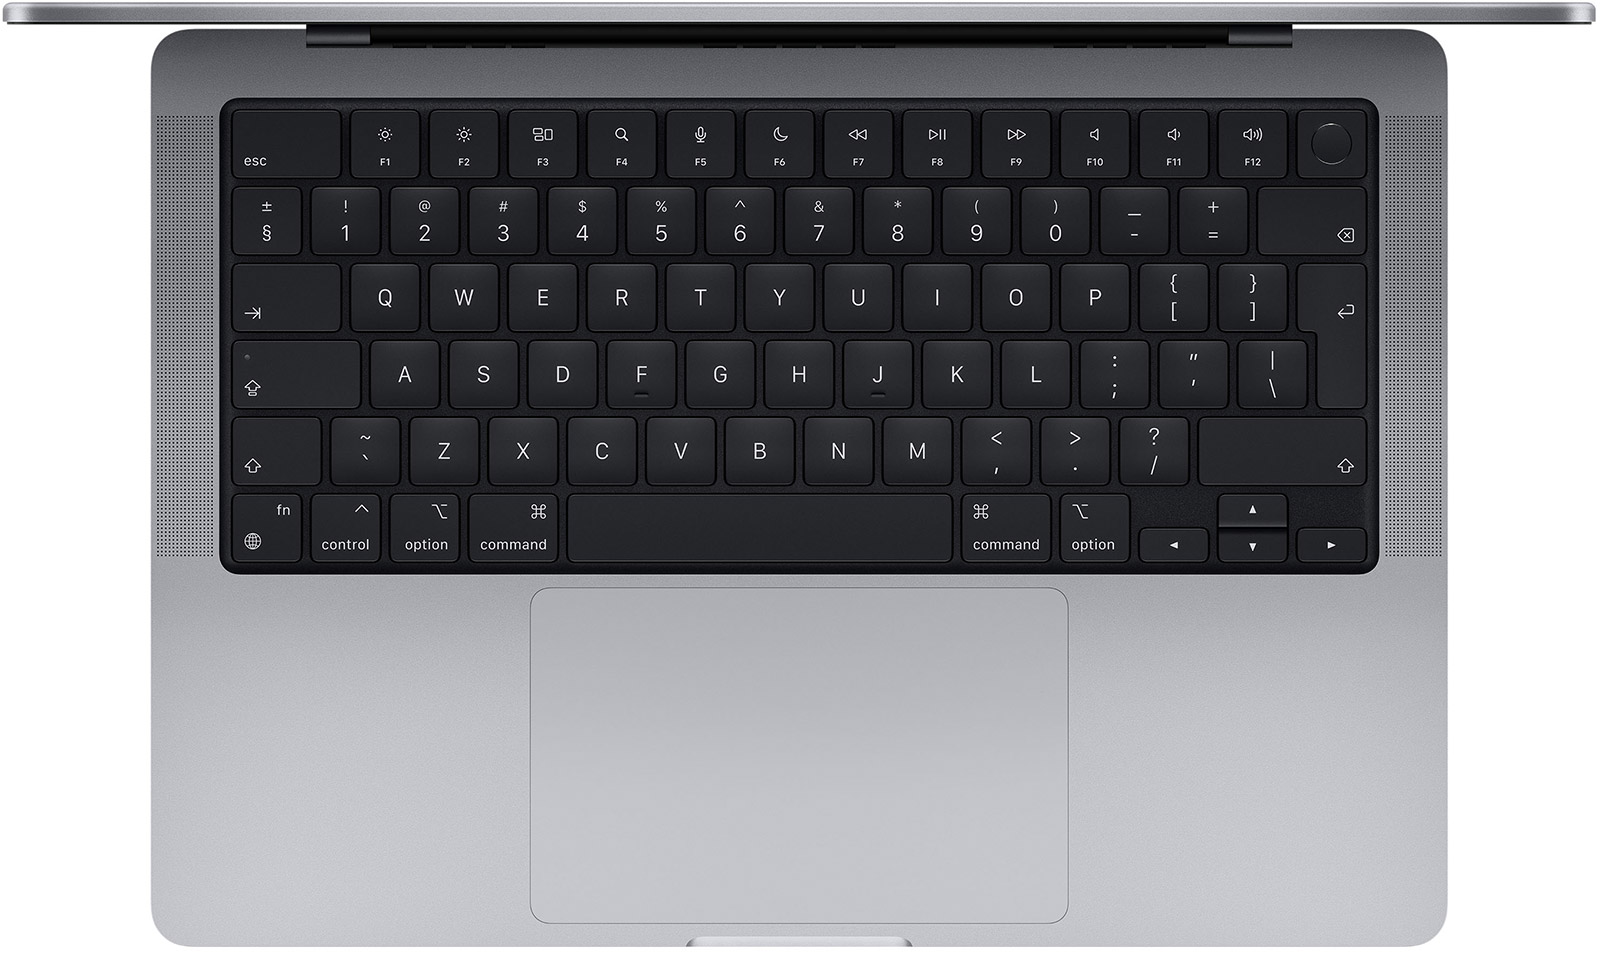 MacBook-Pro-14-2-M1-Max-10-Core-32-GB-1-TB-32-Core-Grafik-CH-Space-Grau-02.jpg